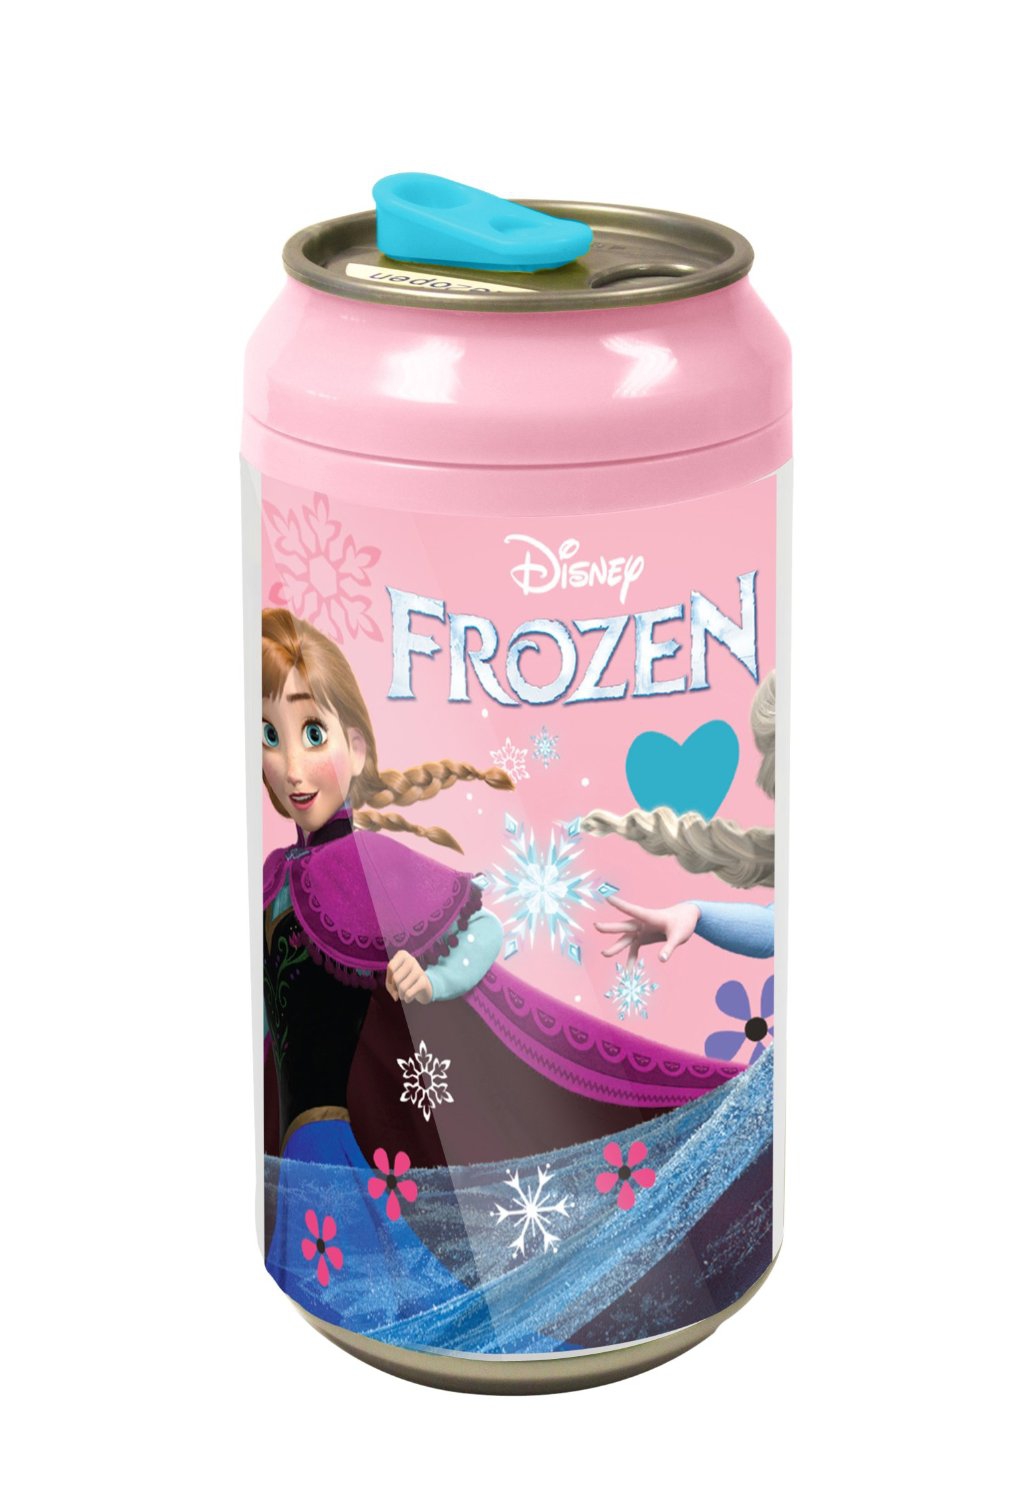 Disney Frozen Elsa & Anna 'Follow Your Heart' 12fl Oz (354ml) Can